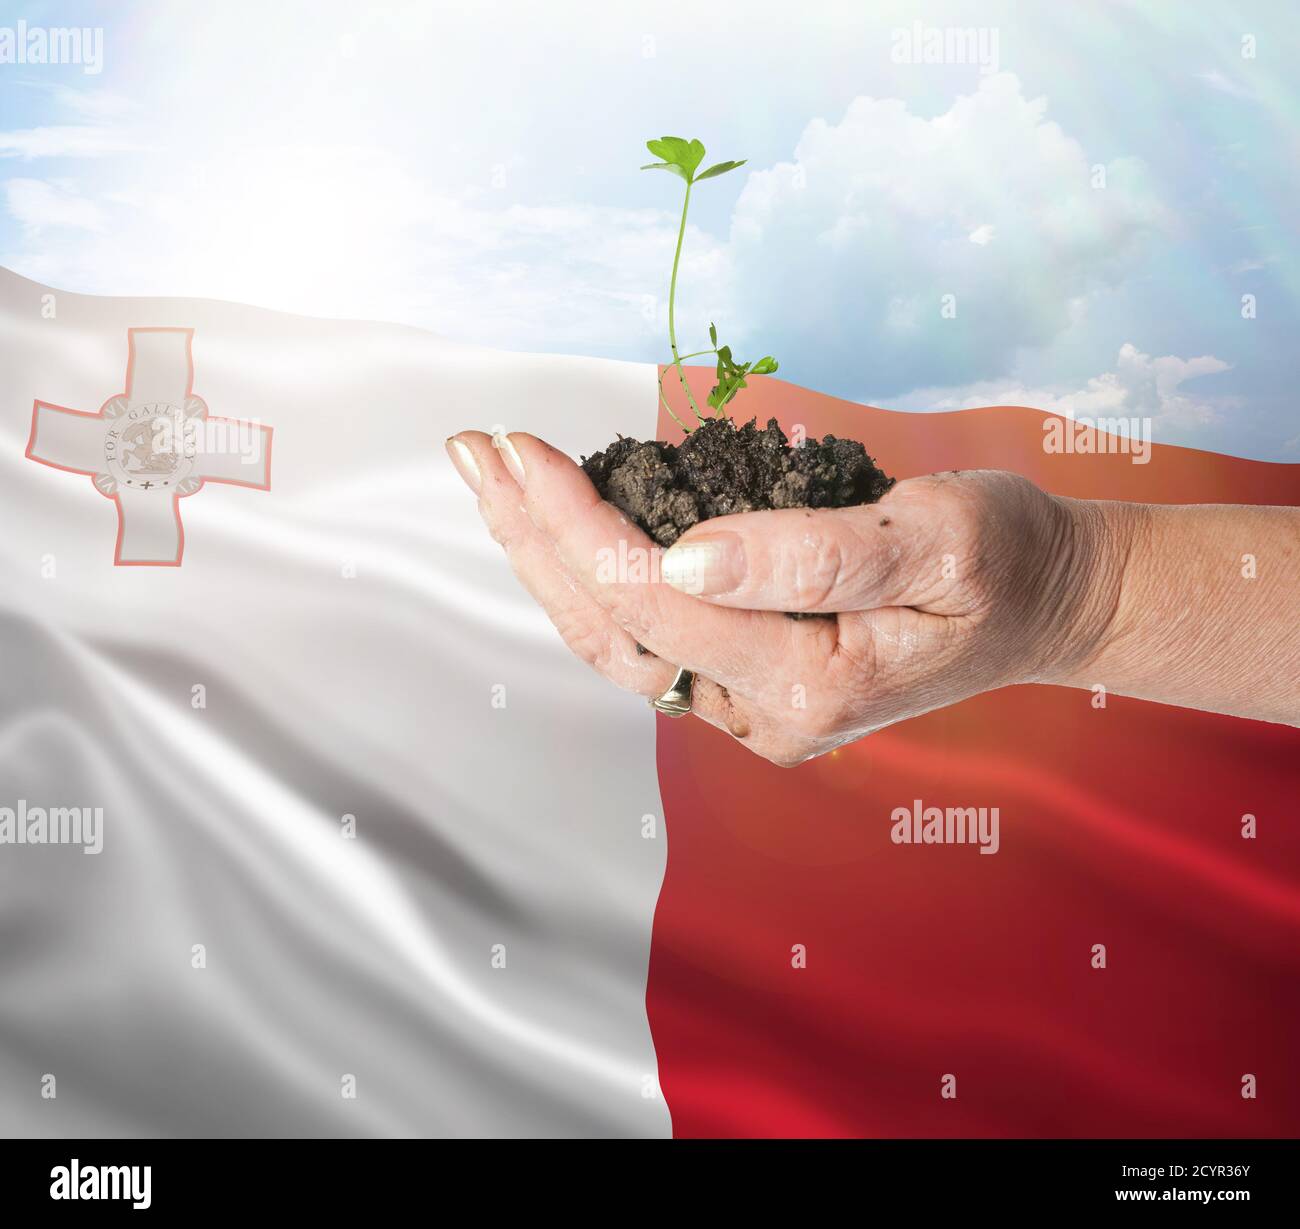 Malta crecimiento y nuevo comienzo. Concepto de energía renovable verde y ecología. Mano sosteniendo planta joven. Foto de stock